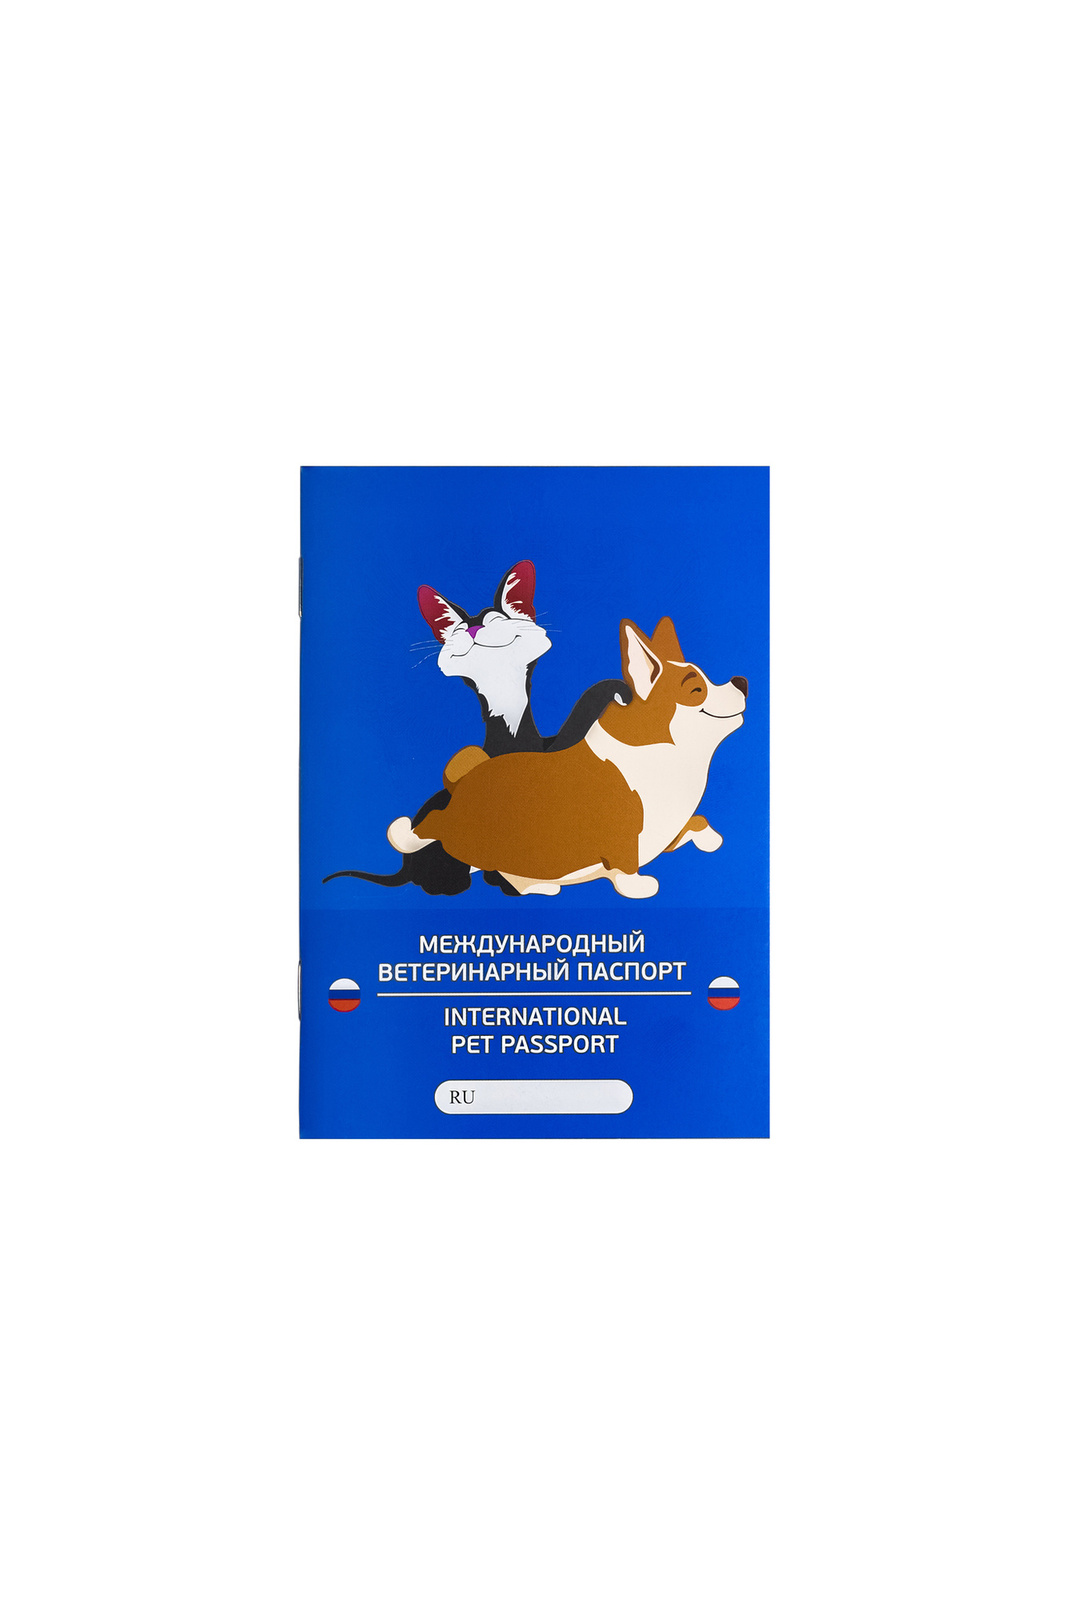 VETЗАБОТА VETЗАБОТА паспорт ветеринарный А6, 28 листов, обложка с ламинацией матовой (10 г) международный ветеринарный паспорт для собак